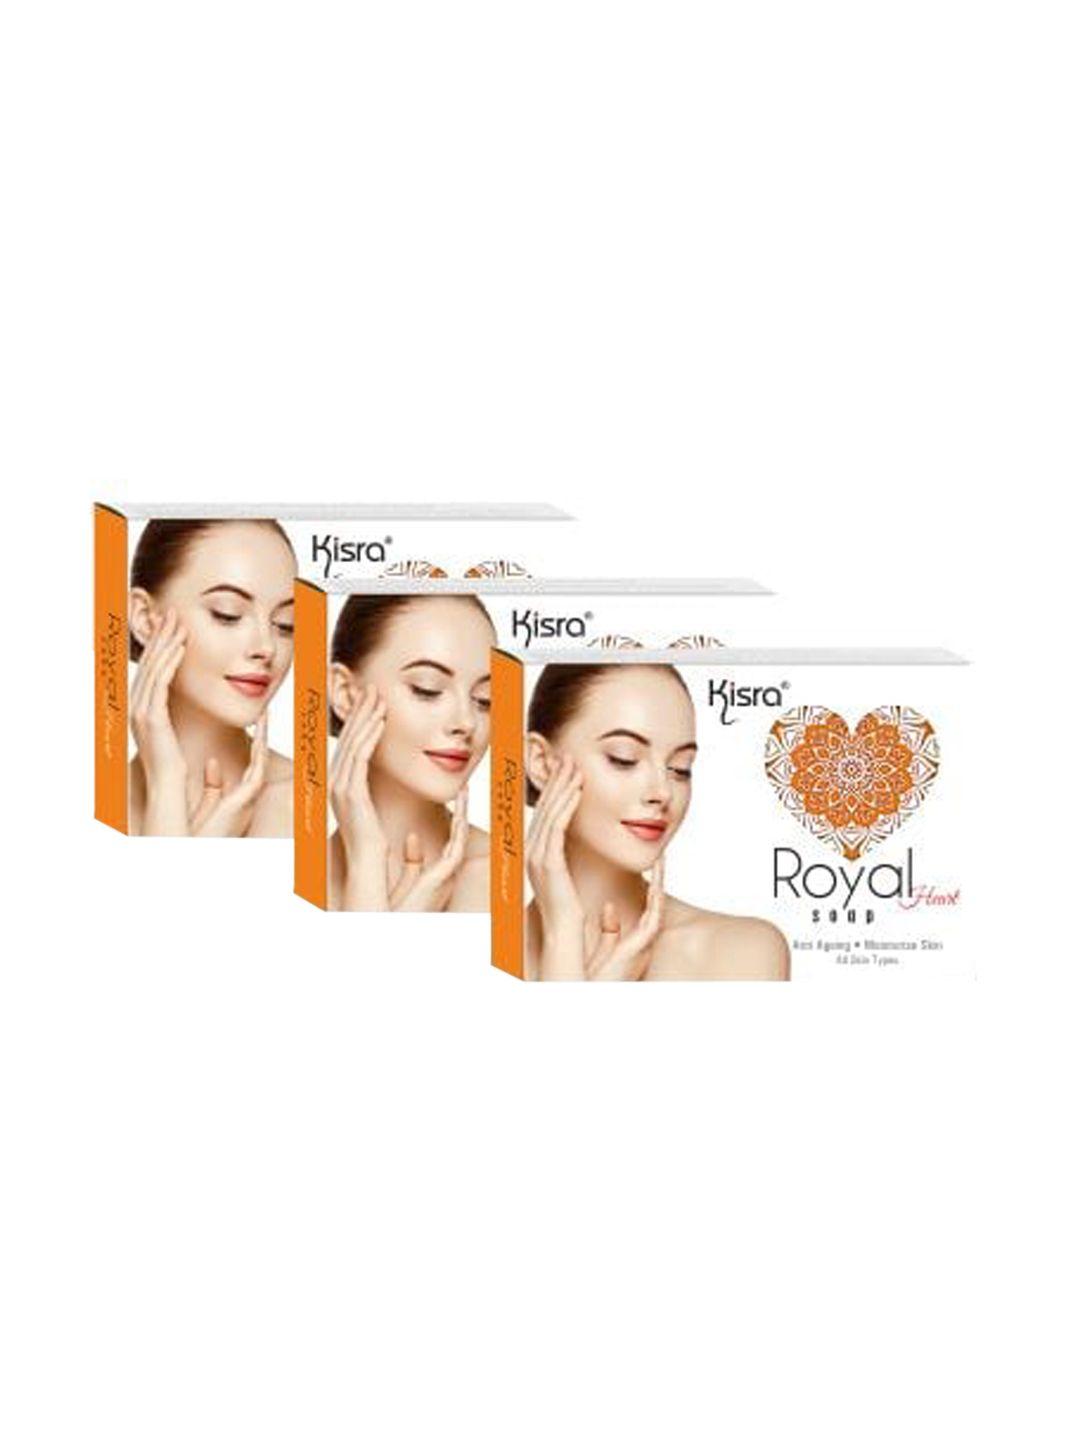 kisra set of 3 royal heart moisturiser soaps for all skin types - 75 g each